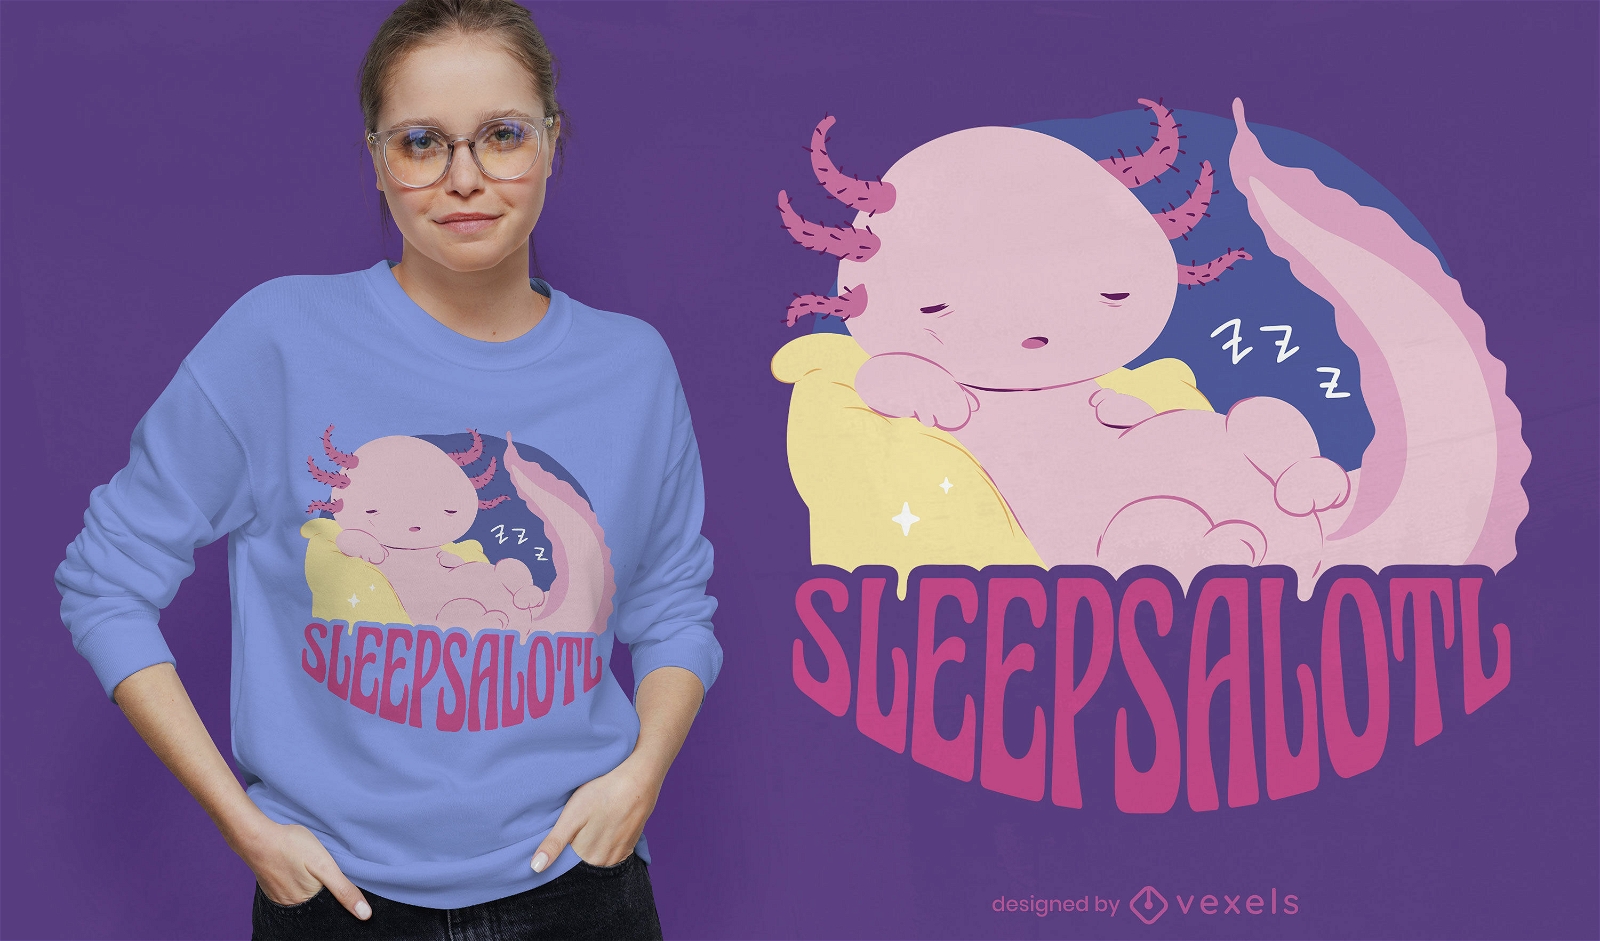 Design engra?ado de t-shirt axolotl sonolento